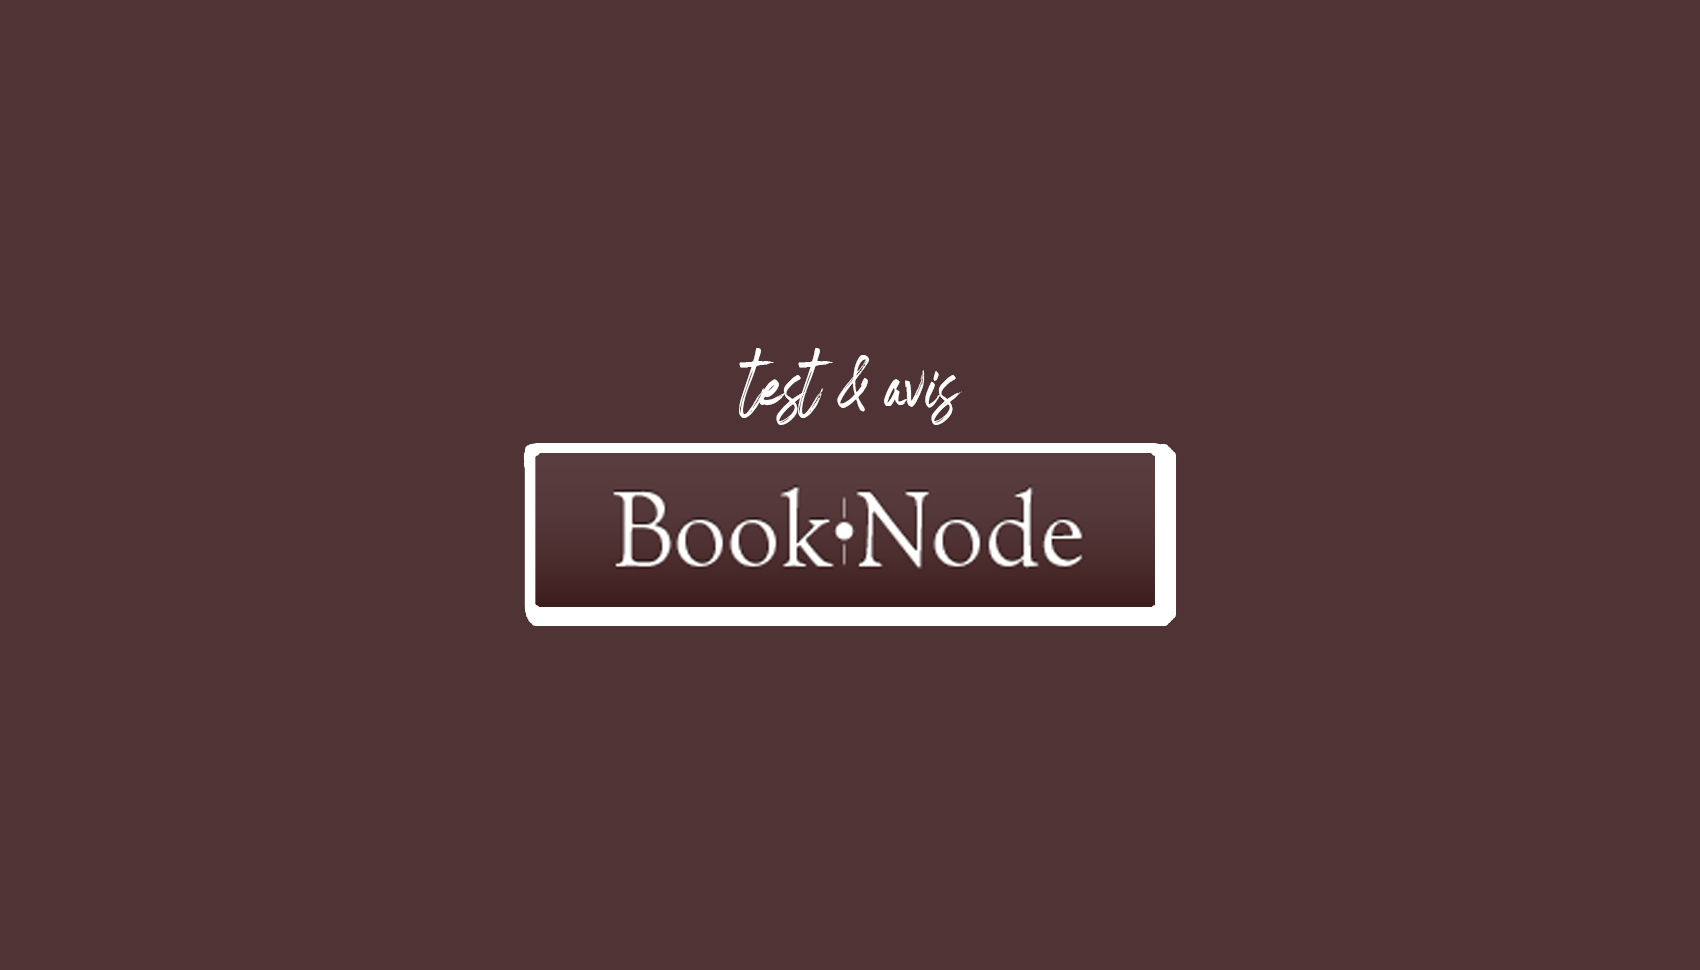 Booknode: бесплатная виртуальная библиотека для любителей чтения (обзор и тестирование)